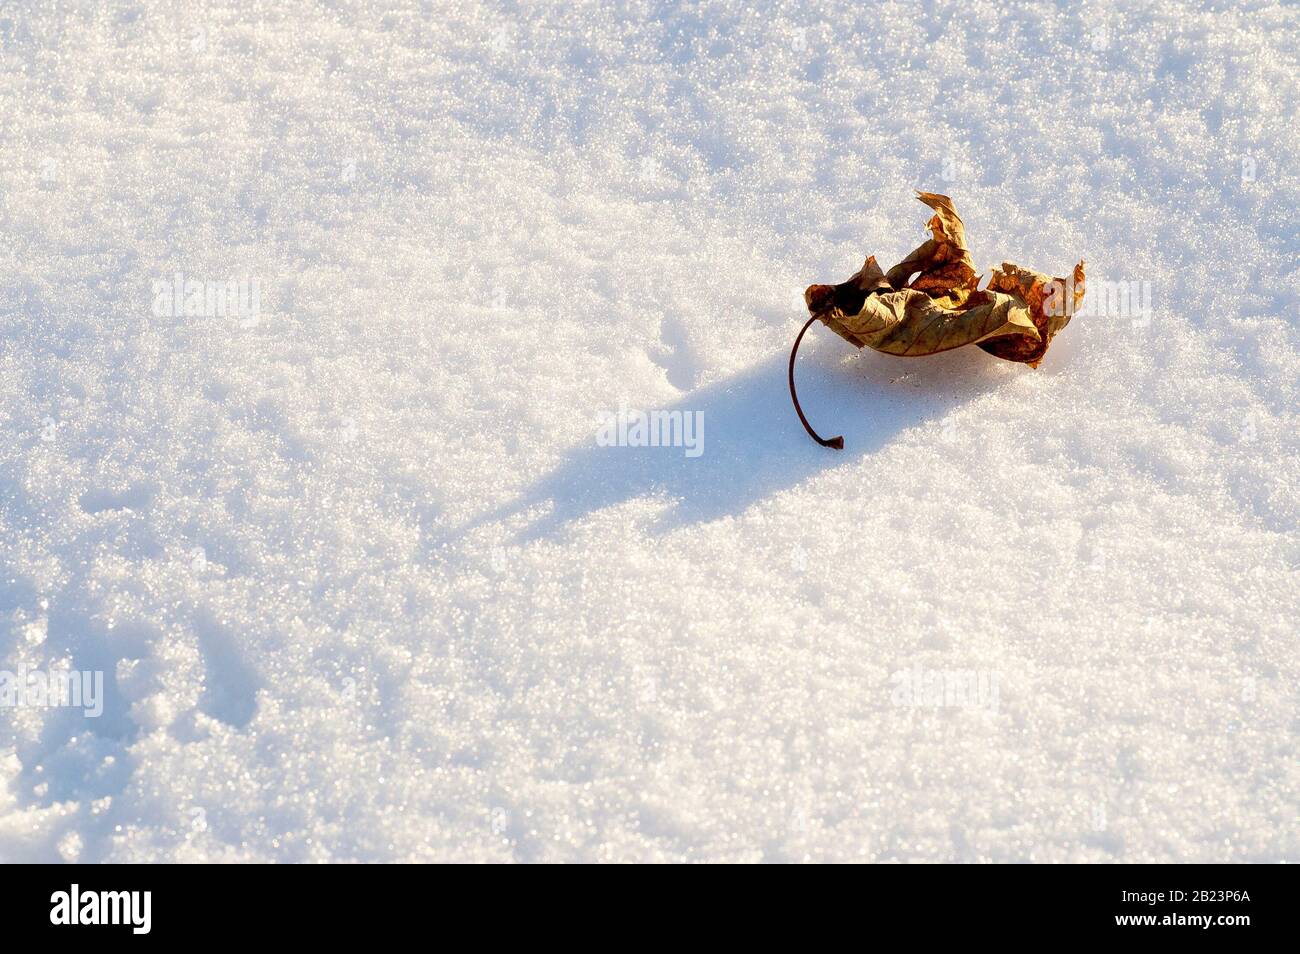 Nahaufnahme eines ausgetrockneten Blattes, das auf einem Flecken ungestörten Schnees liegt und von einer niedrigen Wintersonne angezündet wird. Stockfoto